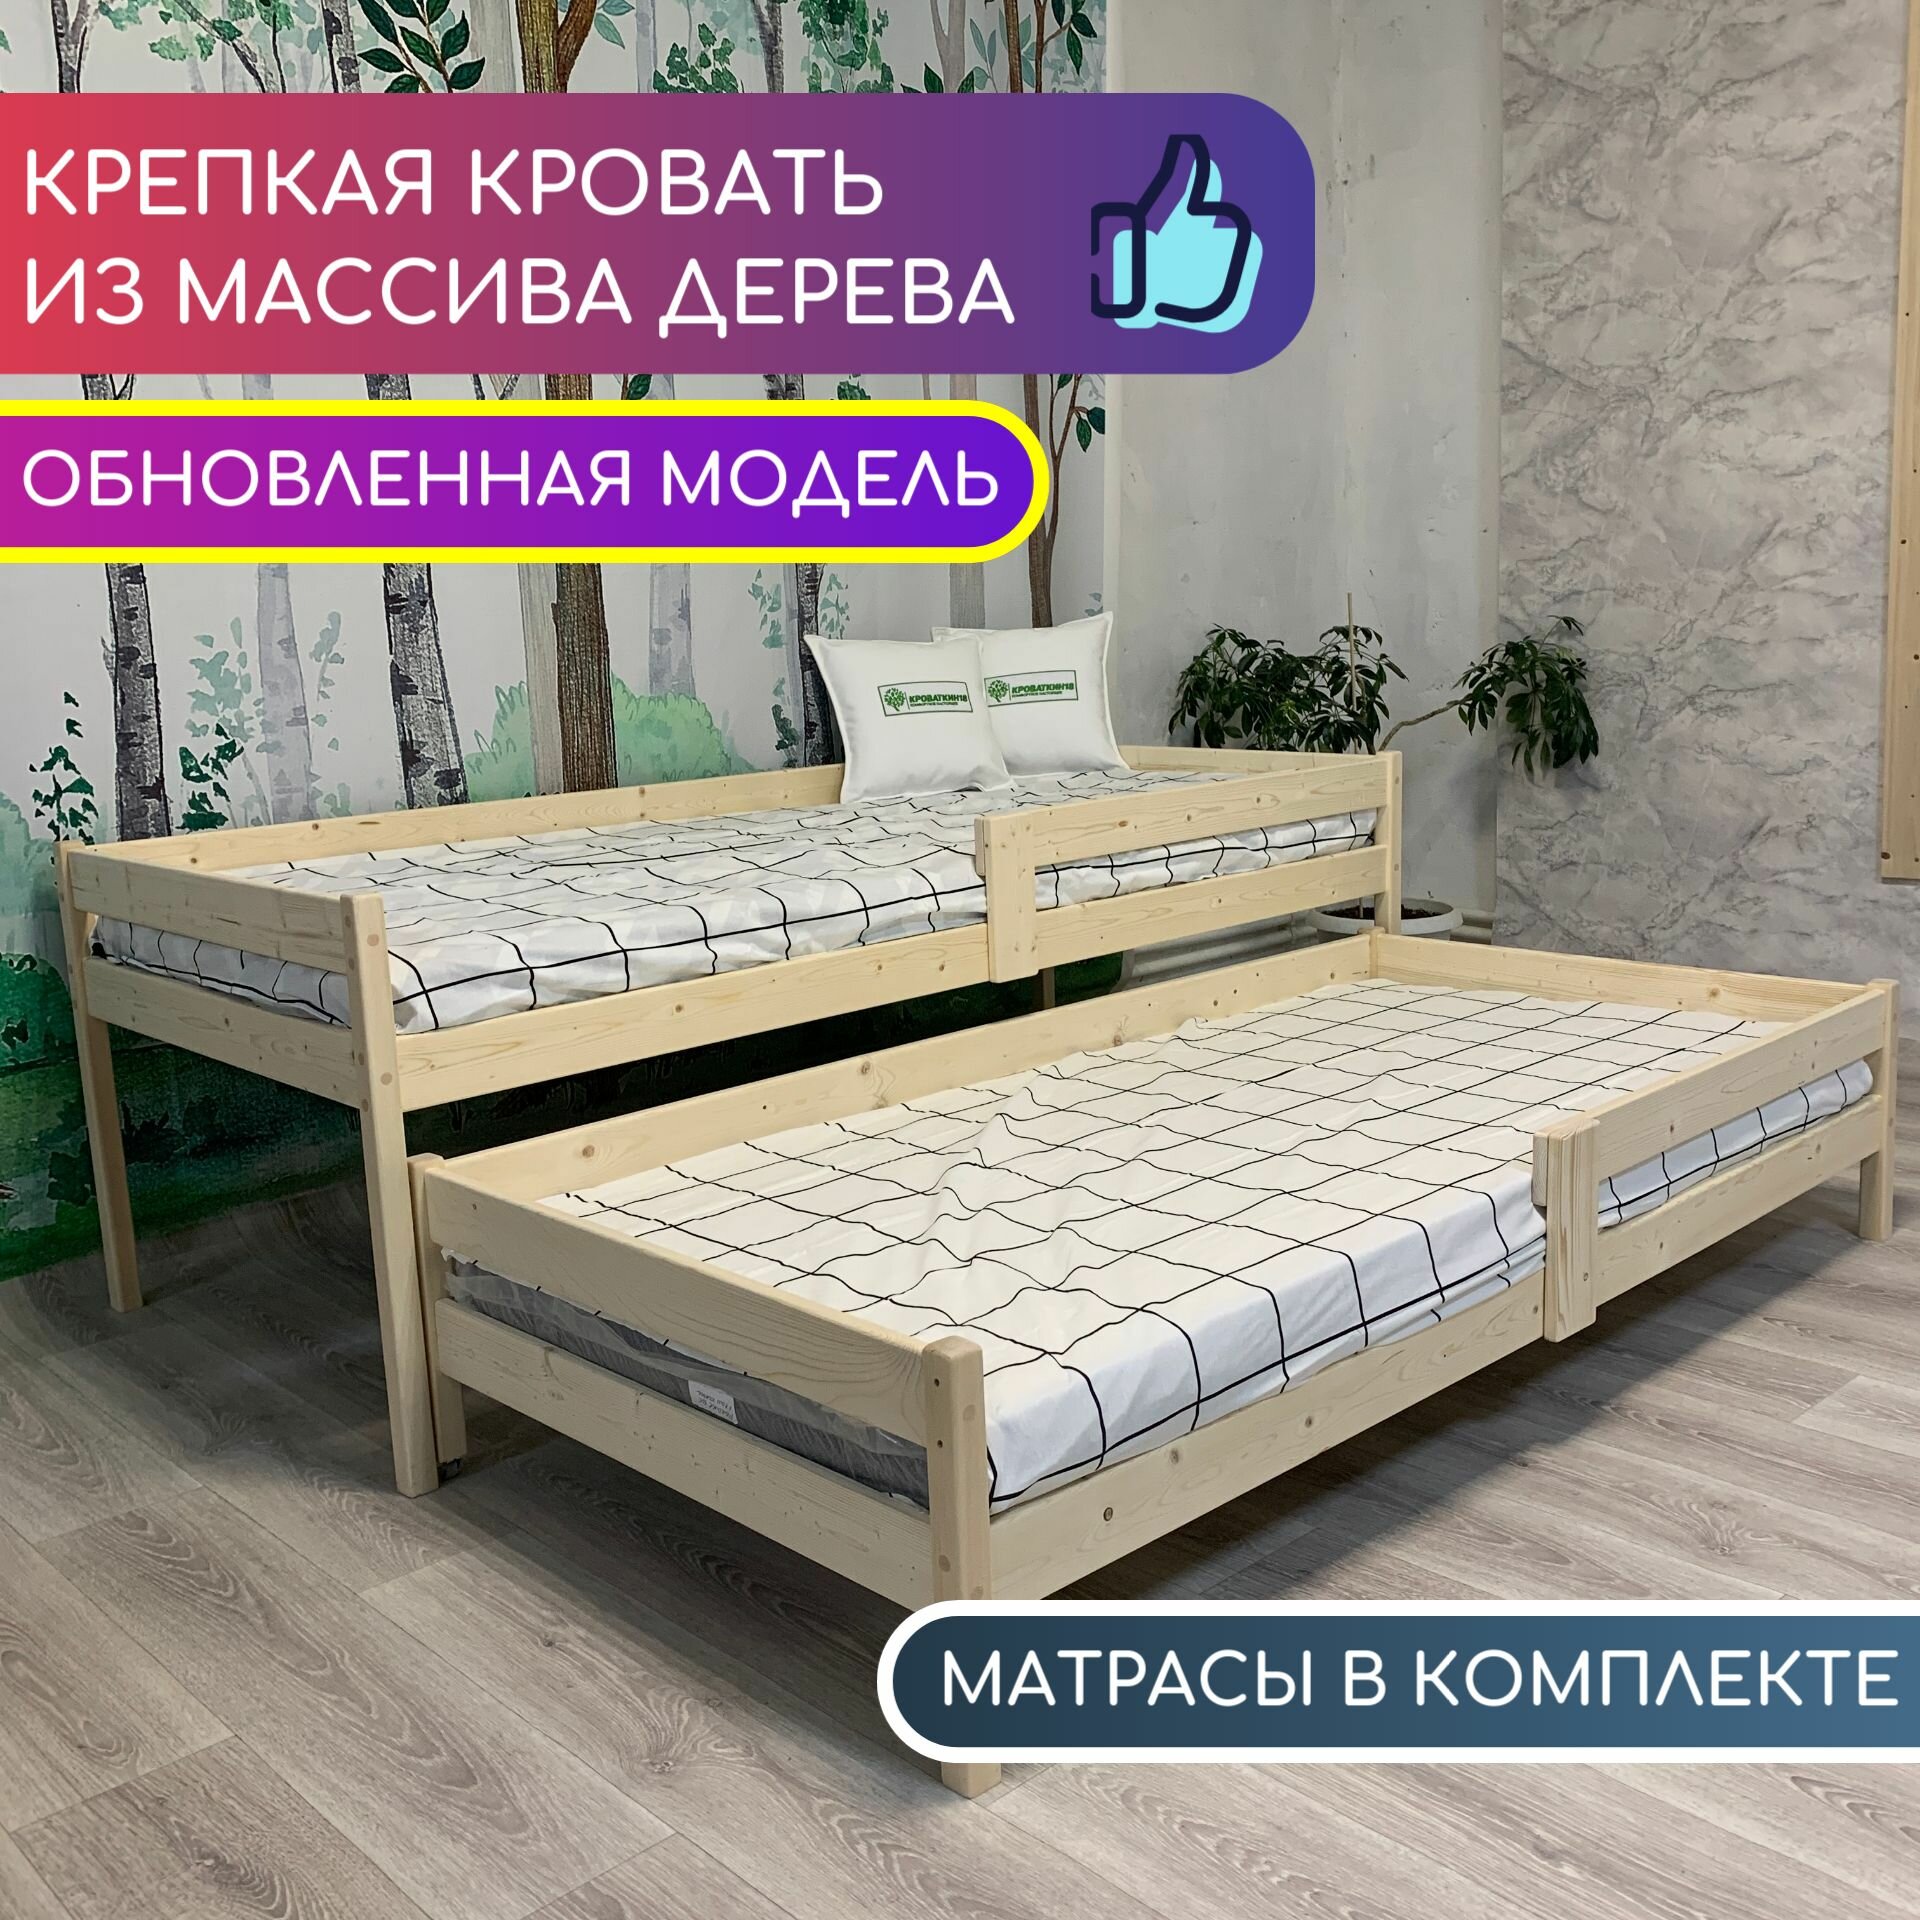 Кровать выдвижная, кровать выкатная детская для двоих, двухъярусная кровать "Эсла" с матрасами 180х80, 170х80 из массива дерева (без покрытия)